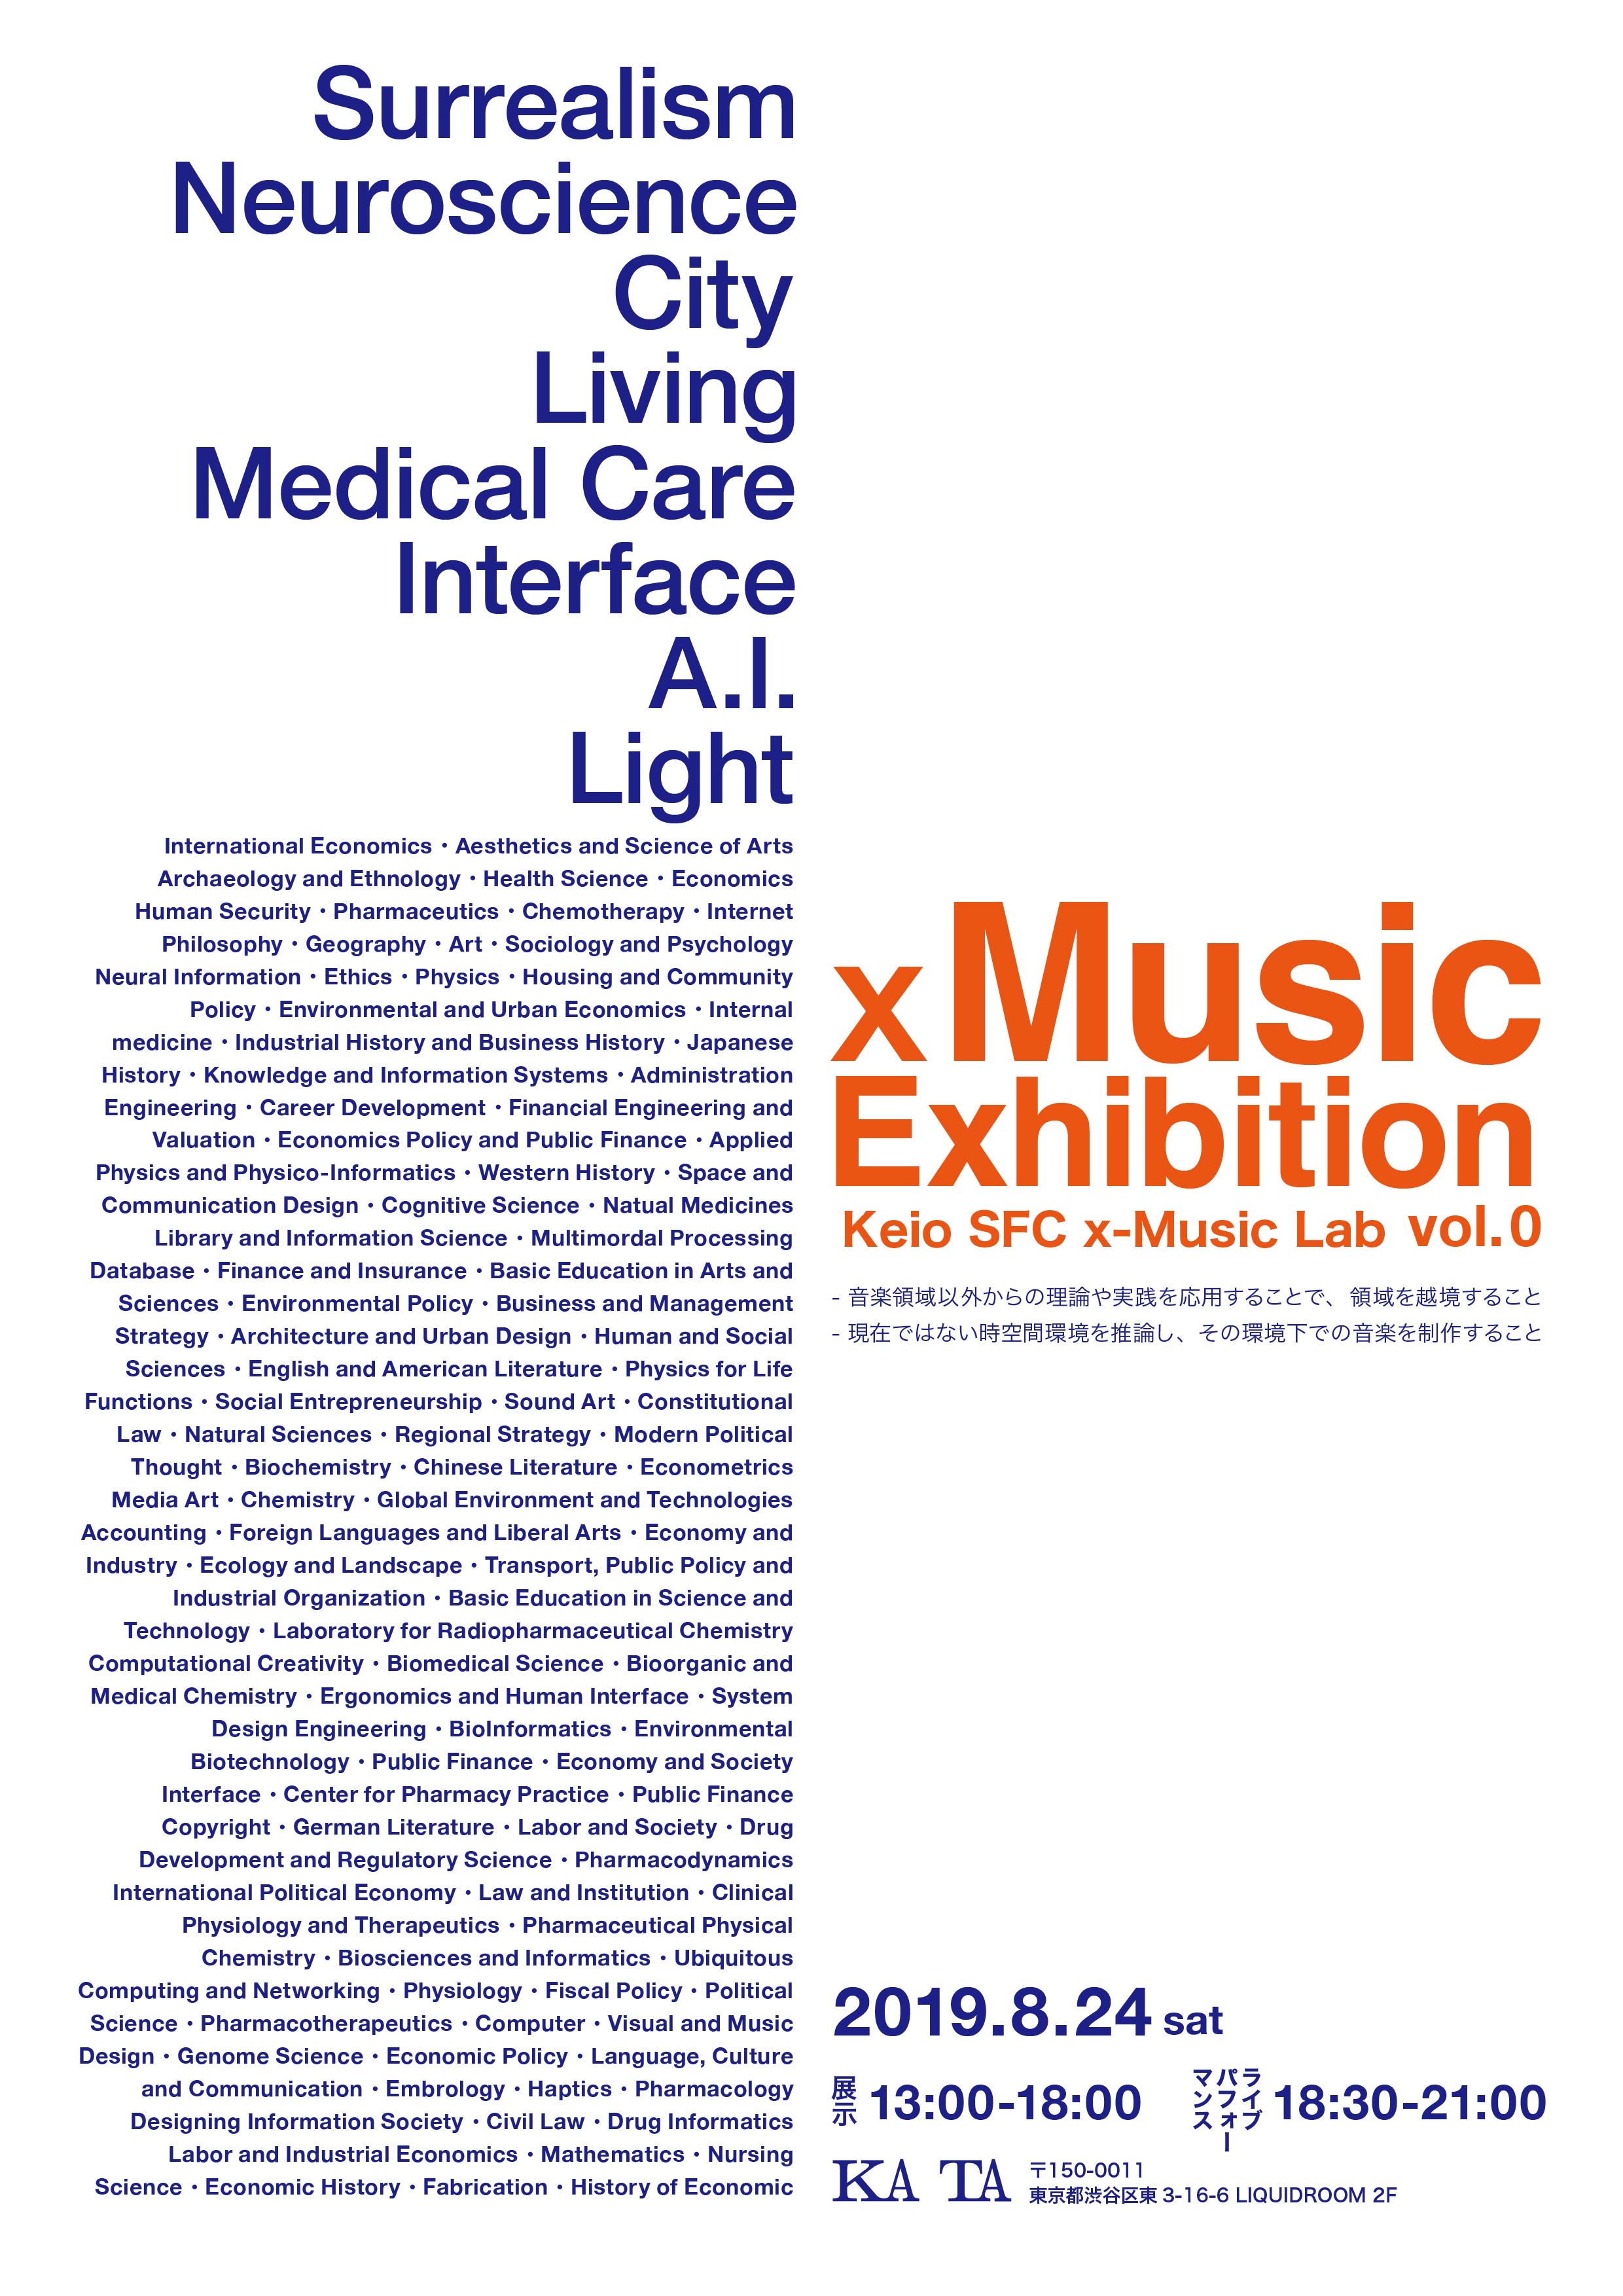 x Music Exhibition Keio SFC x-Music Lab vol.0